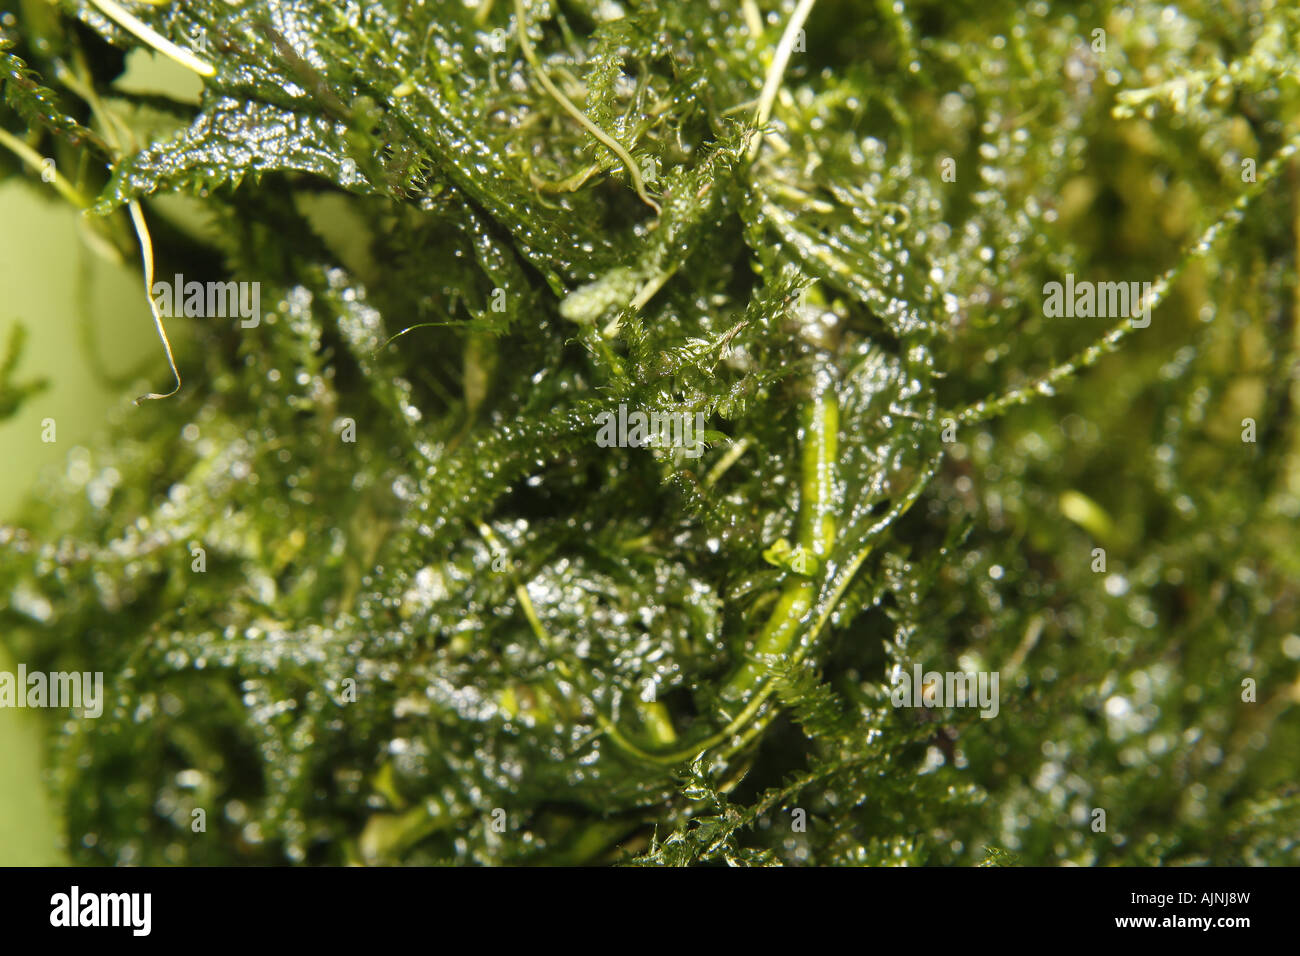 java moss Vesicularia dubyana Stock Photo